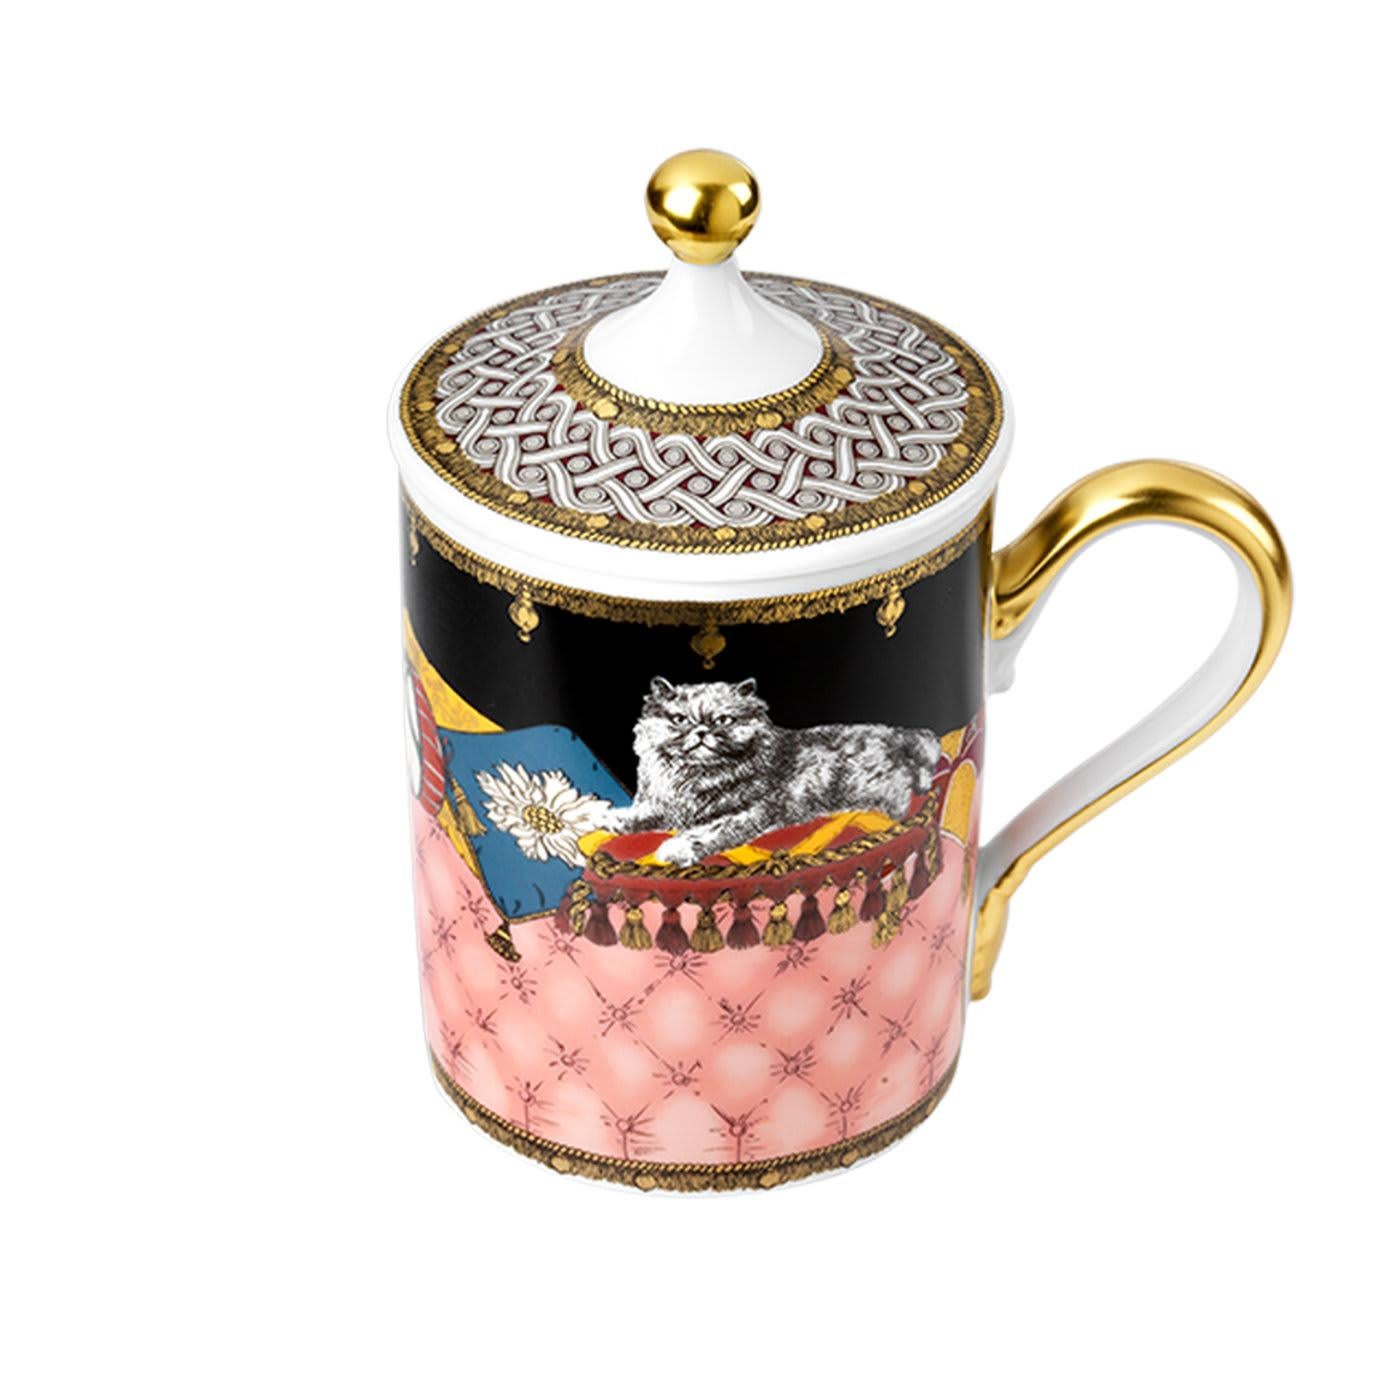 Cette tasse exclusive en porcelaine avec couvercle de la Collection Totem est une version contemporaine des tasses en porcelaine du XVIIIe siècle, qui étaient ornées de décors d'animaux symboliques. Dédié au chat - espèce associée à l'indépendance